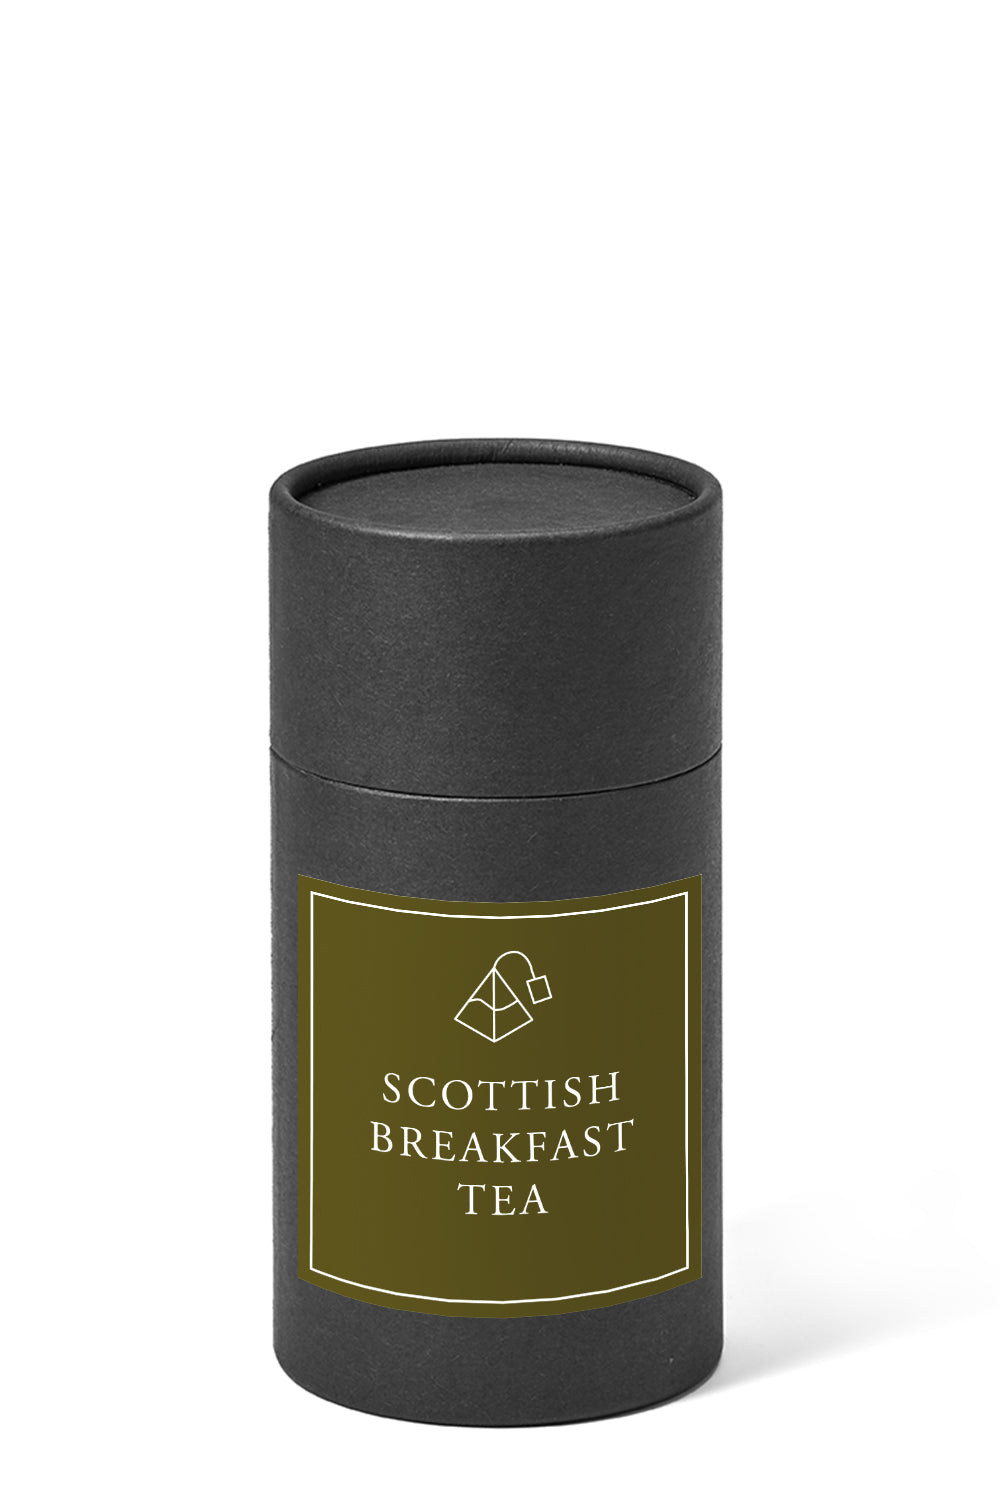 Scottish Breakfast Tea (pyramid bags)-15 pyramids gift-Loose Leaf Tea-High Teas